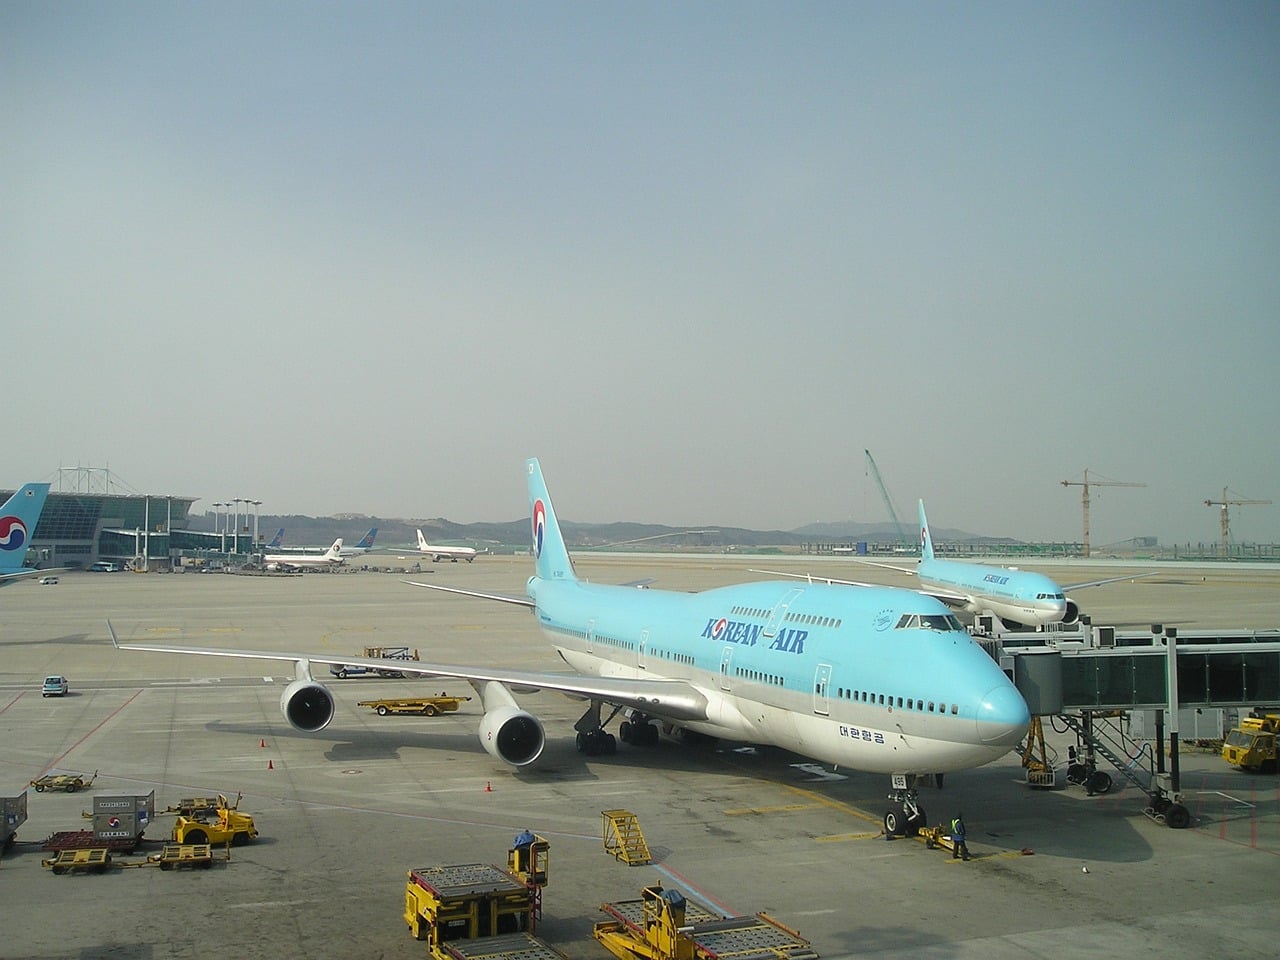 43.2-corea del sur vuelos